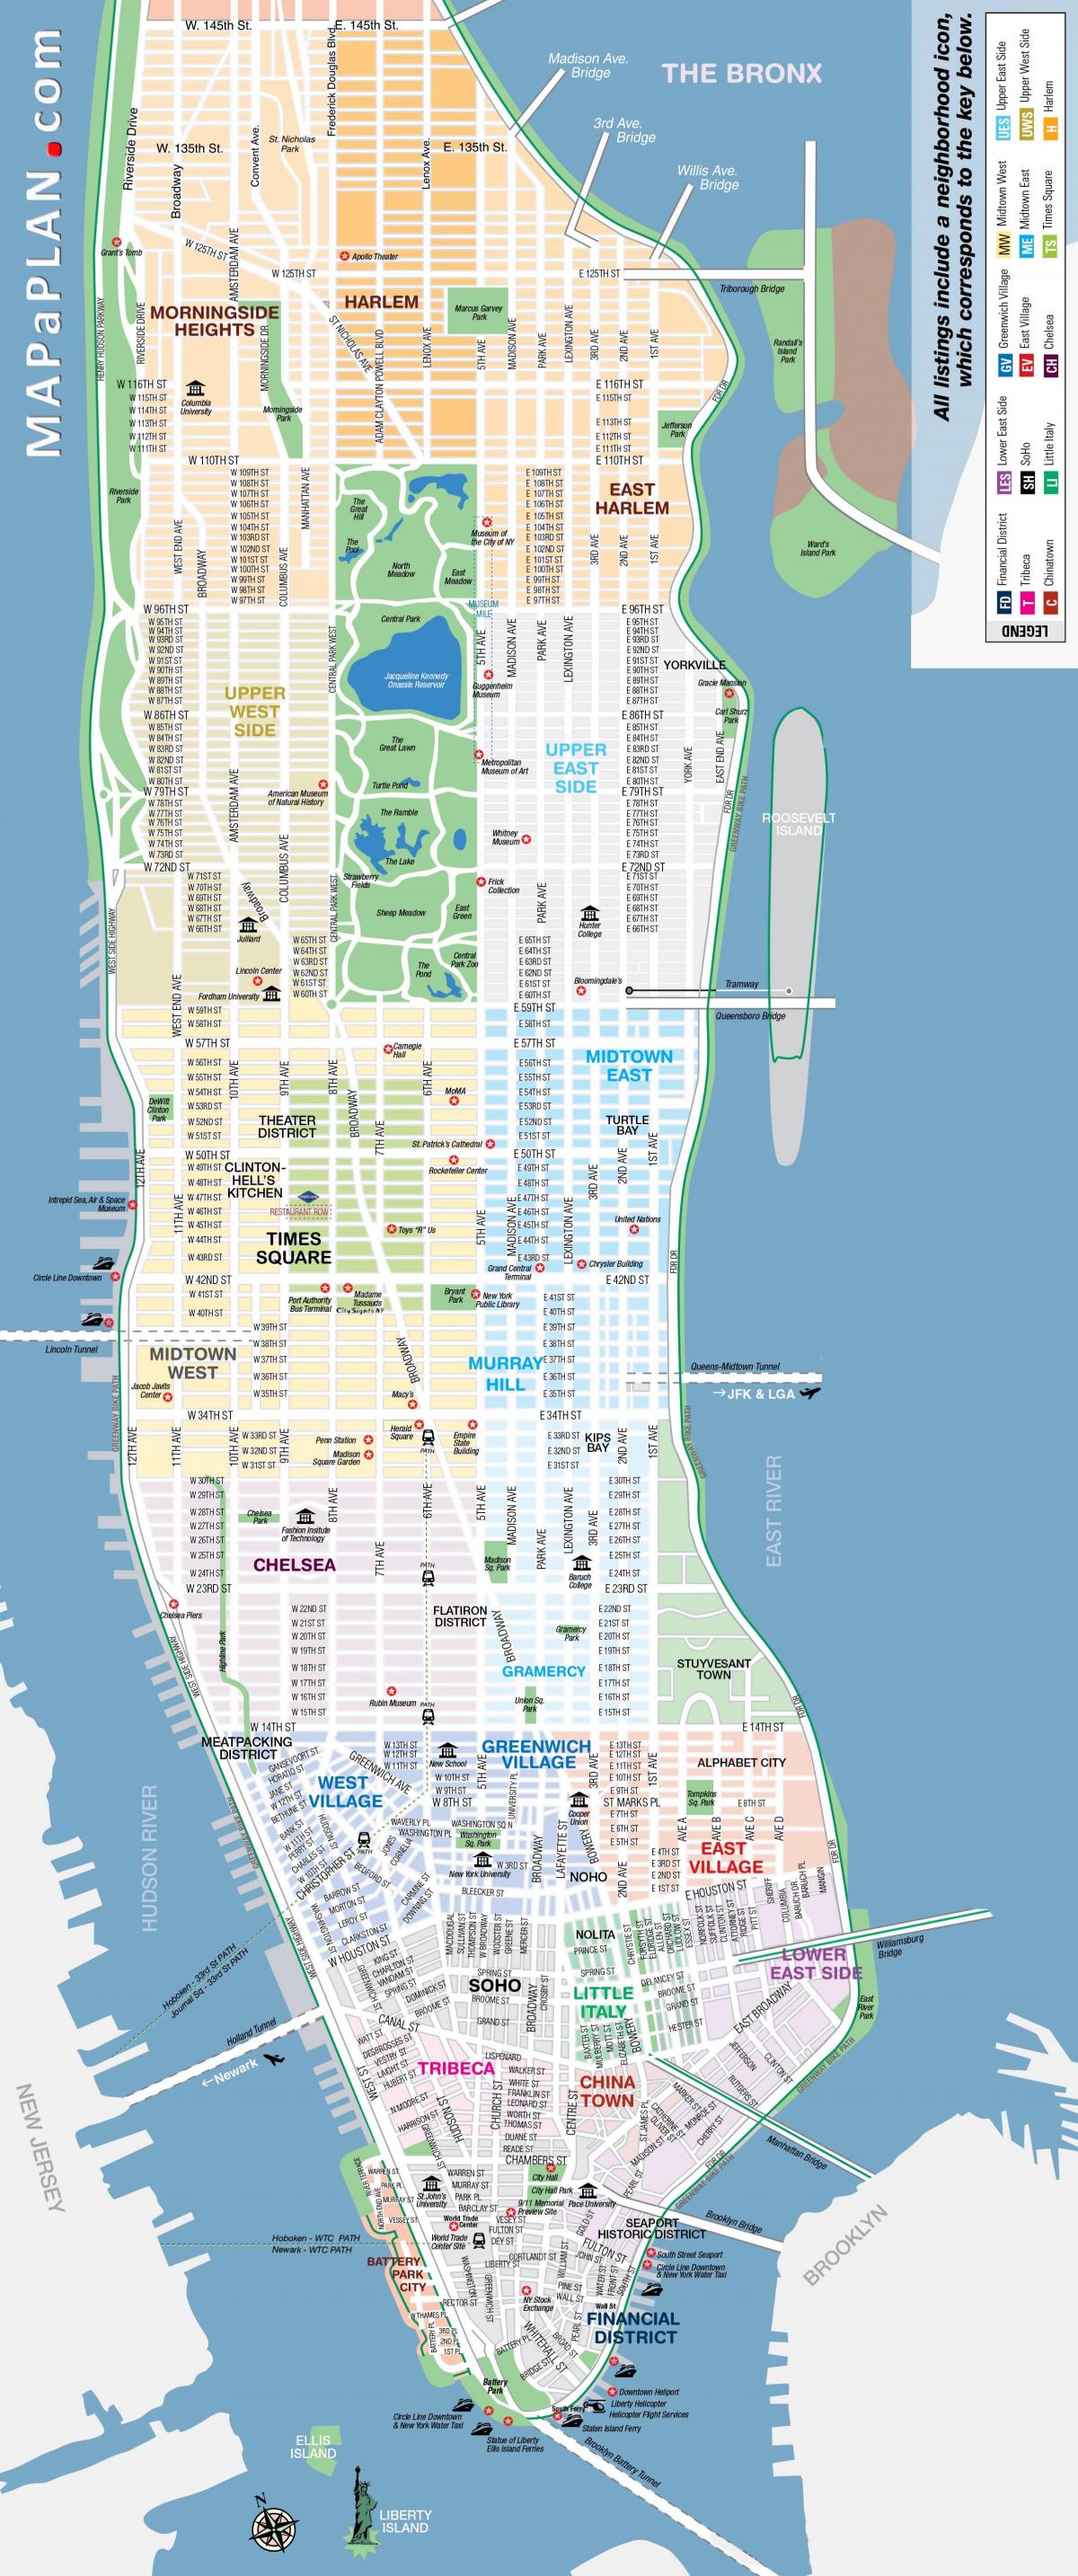 gratuit de tipărit harta din Manhattan, new york